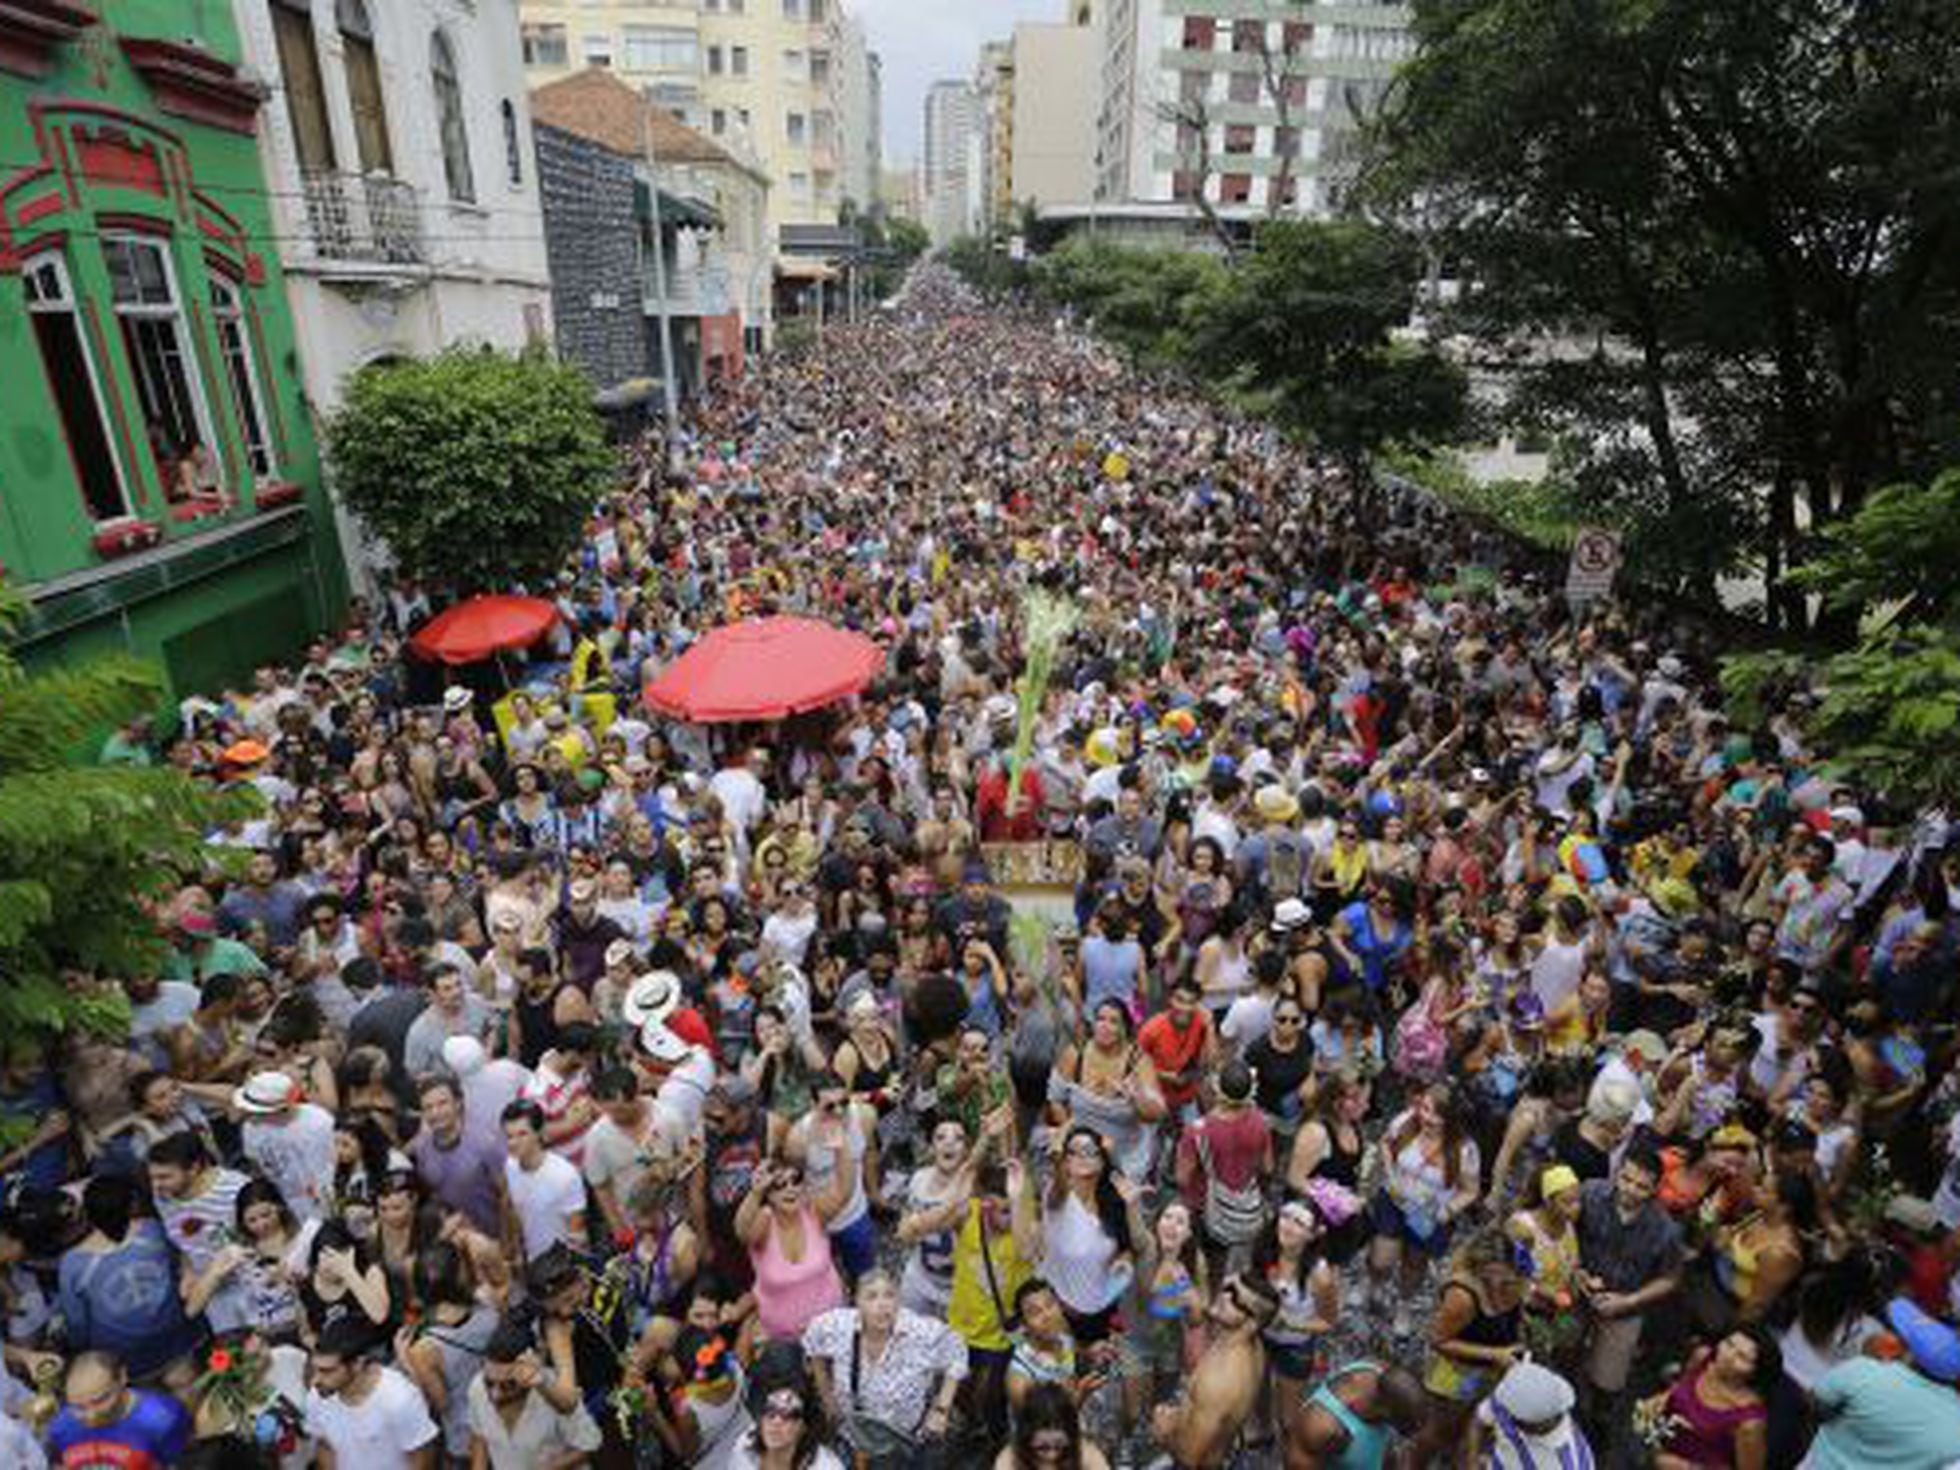 Galeria do Rock, na Avenida São João, terá bar, festival e quer abrir todo  domingo - Estadão